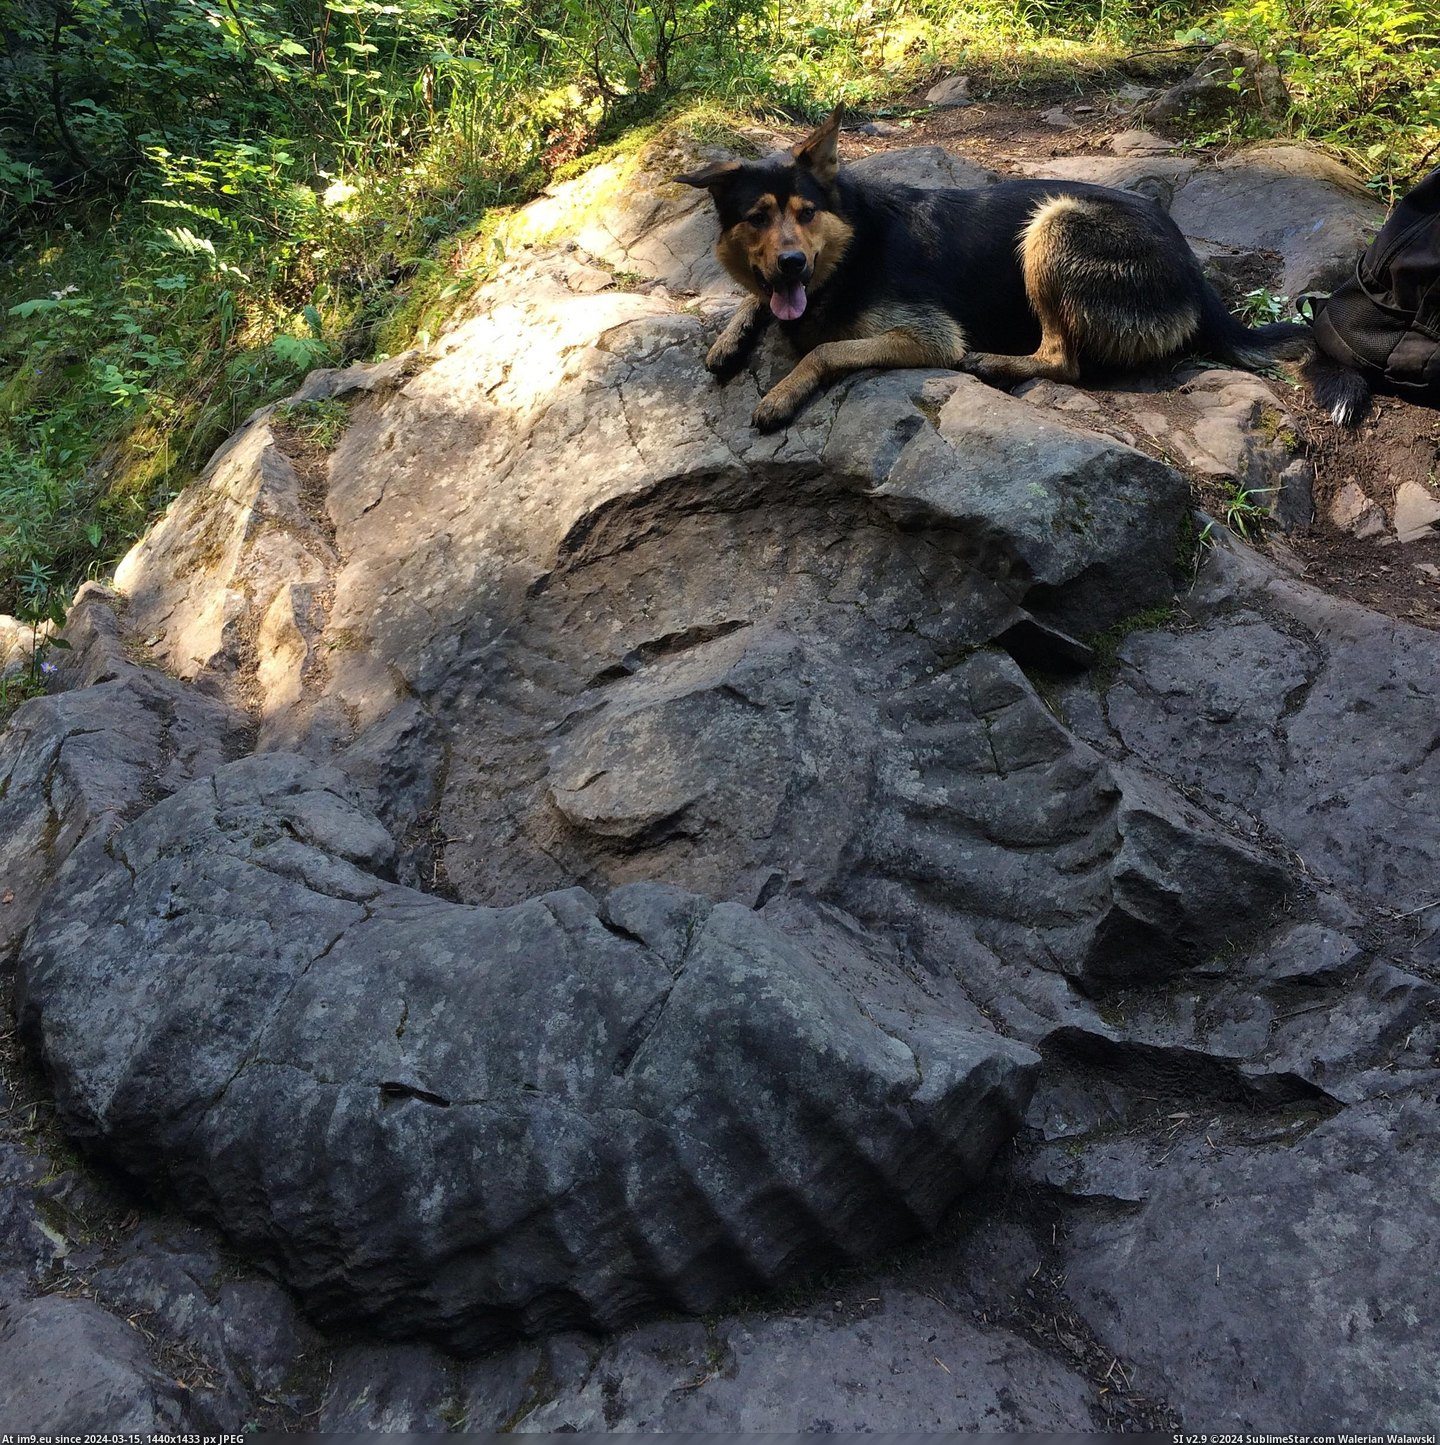 #Giant #Fossil #Otto [Pics] Giant Ammonite fossil and Otto Pic. (Bild von album My r/PICS favs))